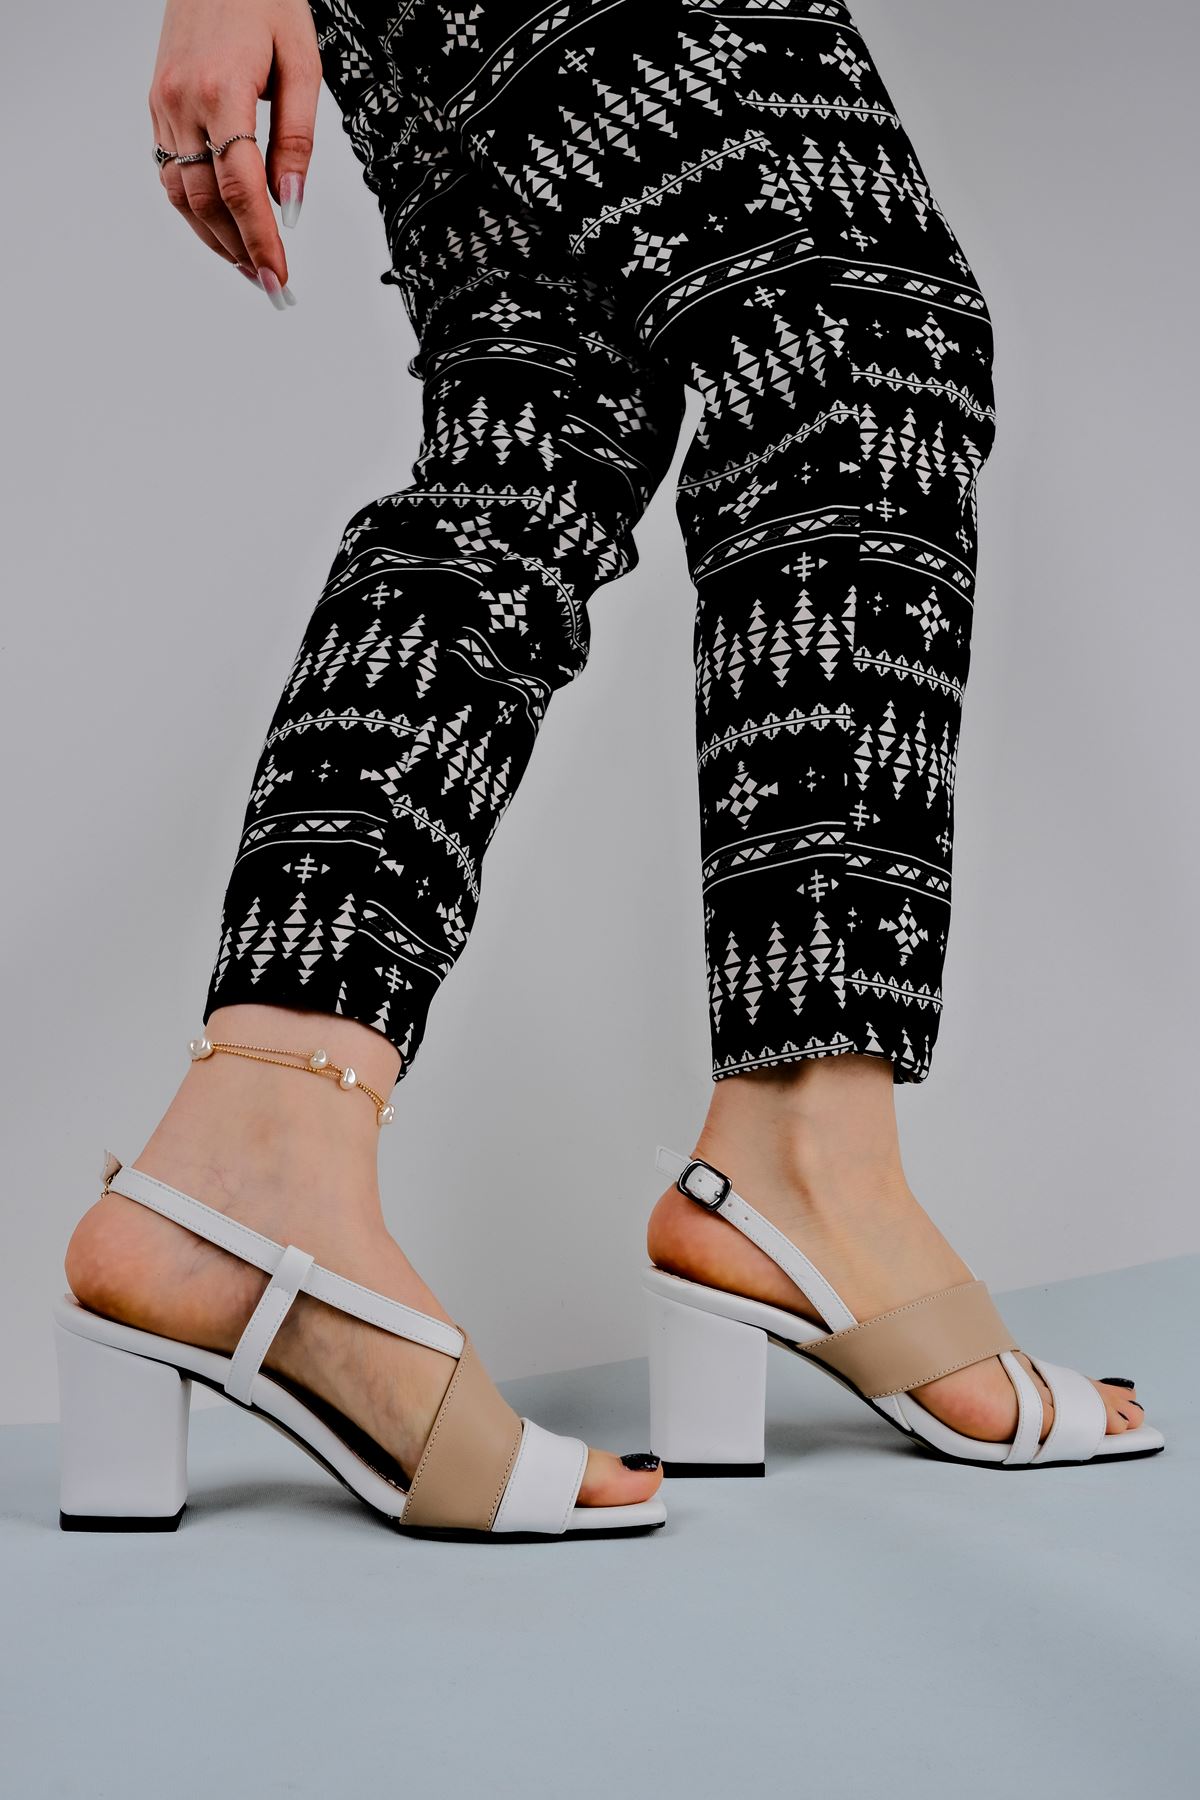 Kadın Topuklu Ayakkabı Renkli Çapraz Detaylı-Krem